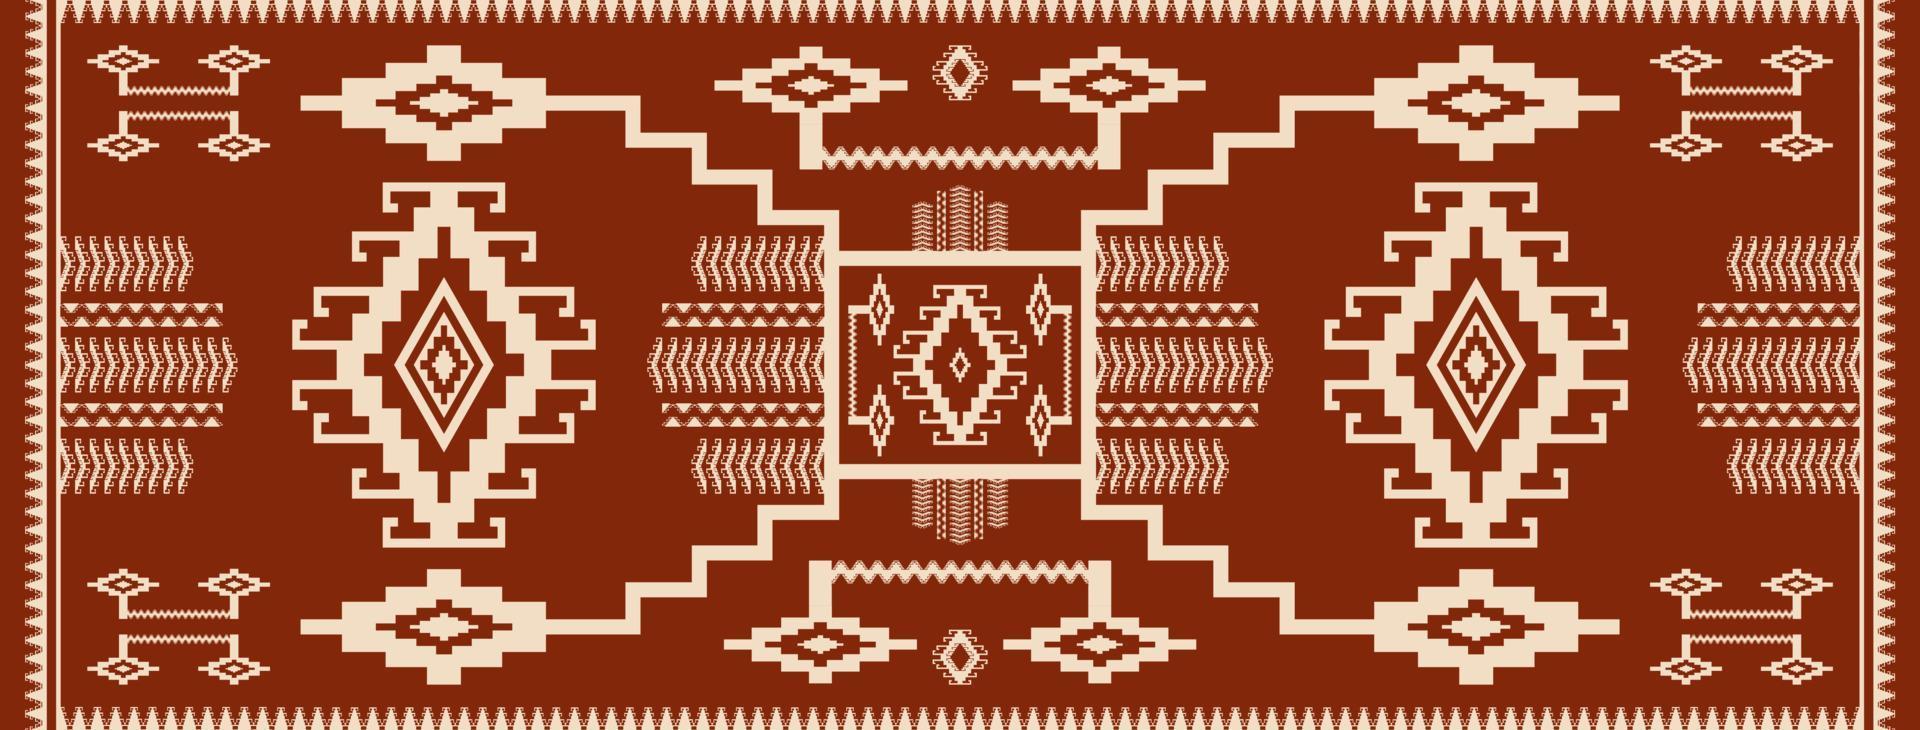 patrón geométrico de corredor étnico. alfombra étnica marrón del sudoeste. alfombra de estilo geométrico kilim azteca nativo marrón. uso de patrones geométricos étnicos para la decoración del hogar o elementos decorativos de corredores. vector